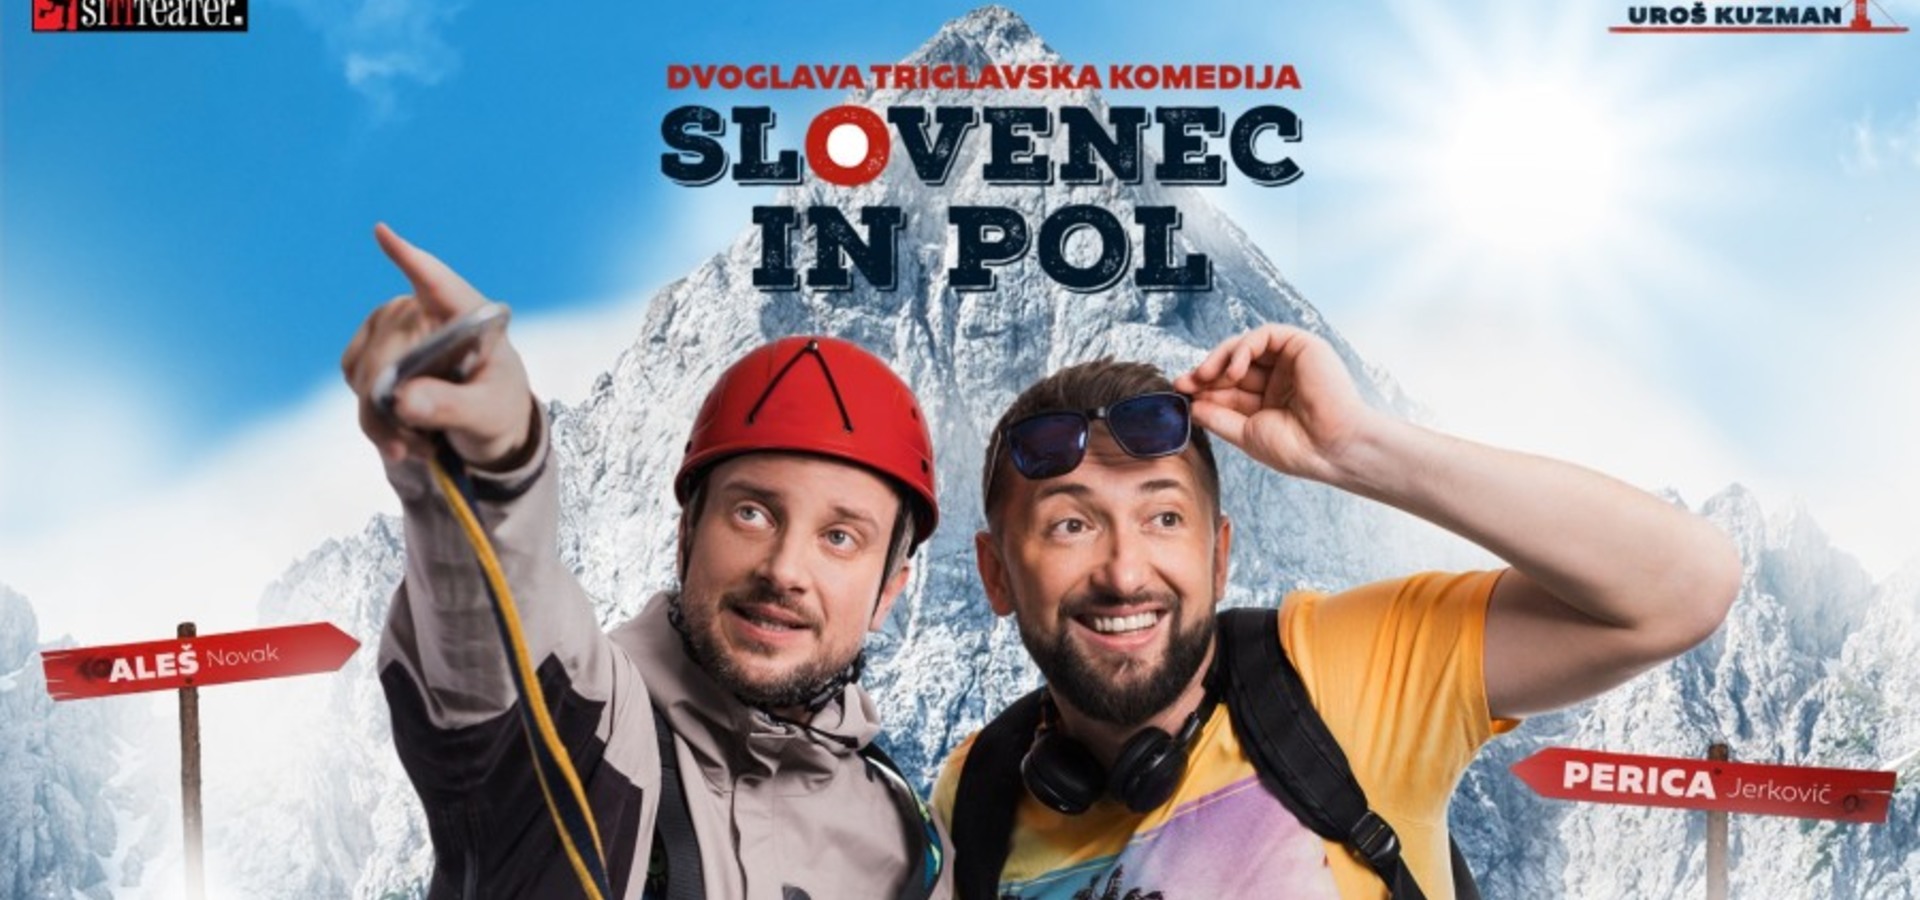 Slovenec in pol, Perica Jerković in Aleš Novak